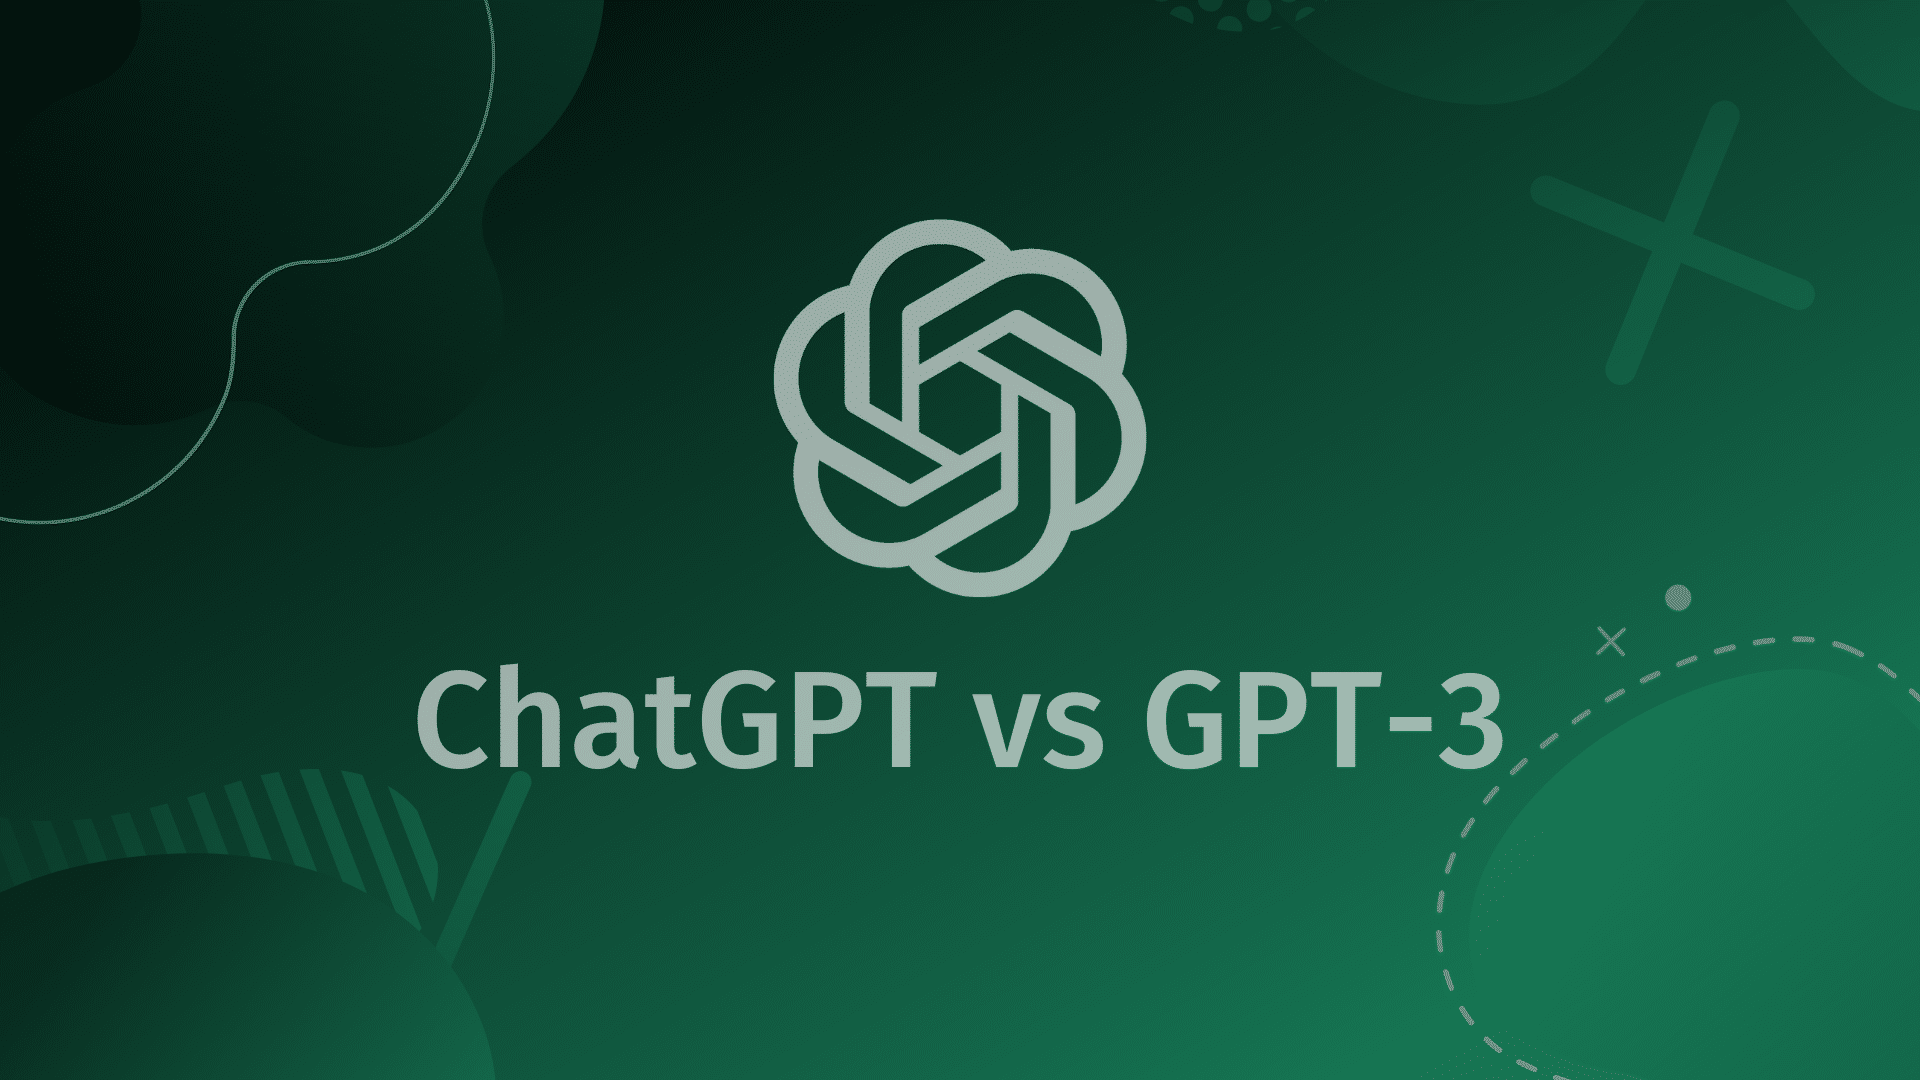 Chatgpt versus GPT-3